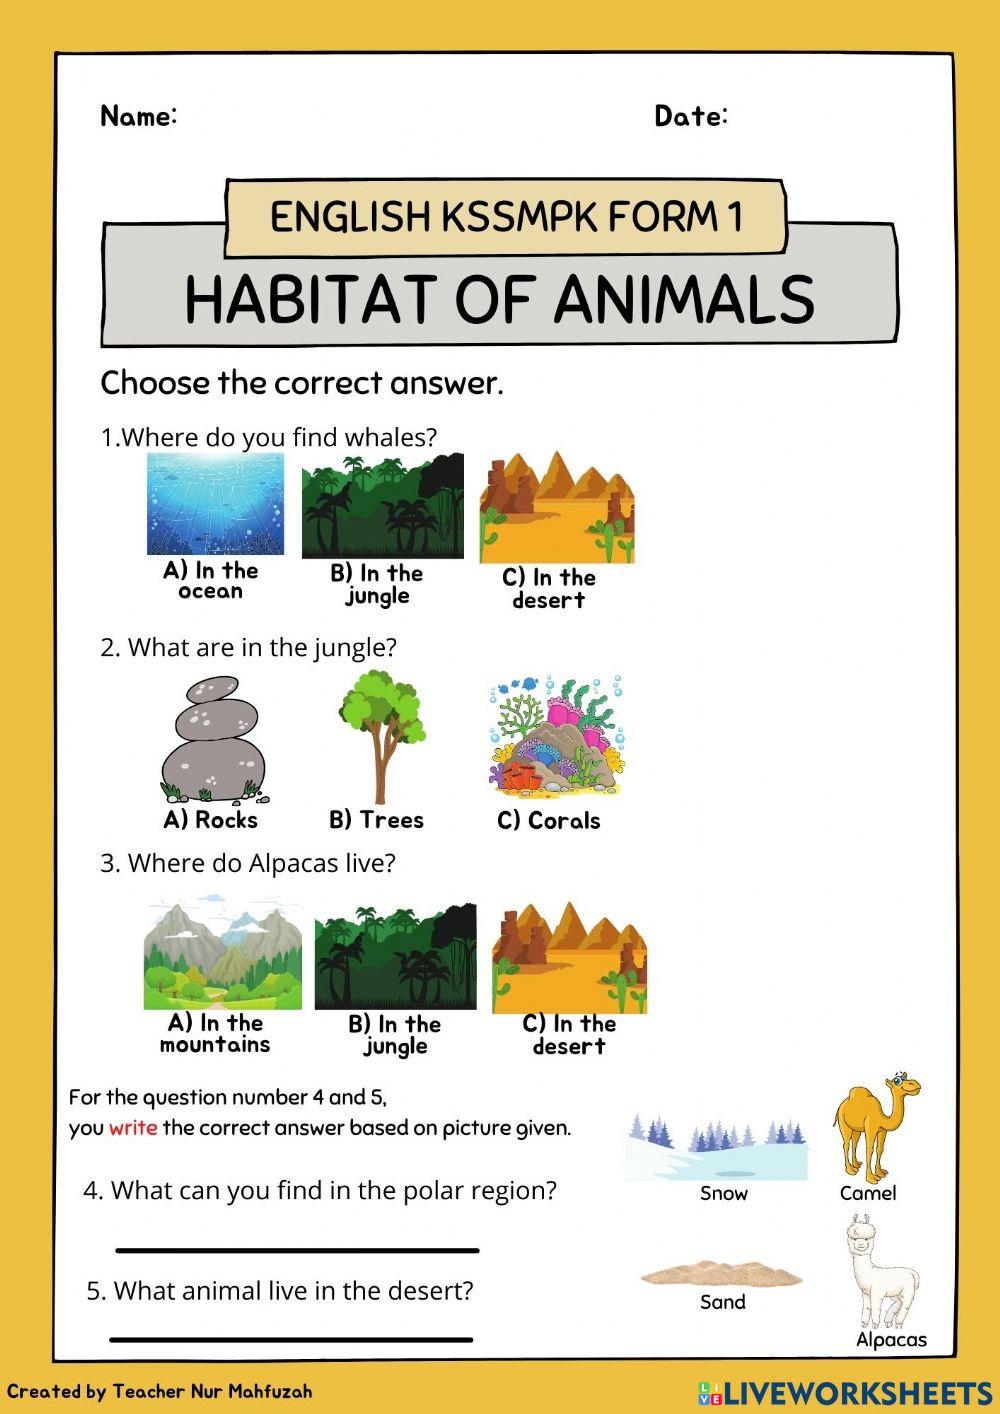 Habitat of animals